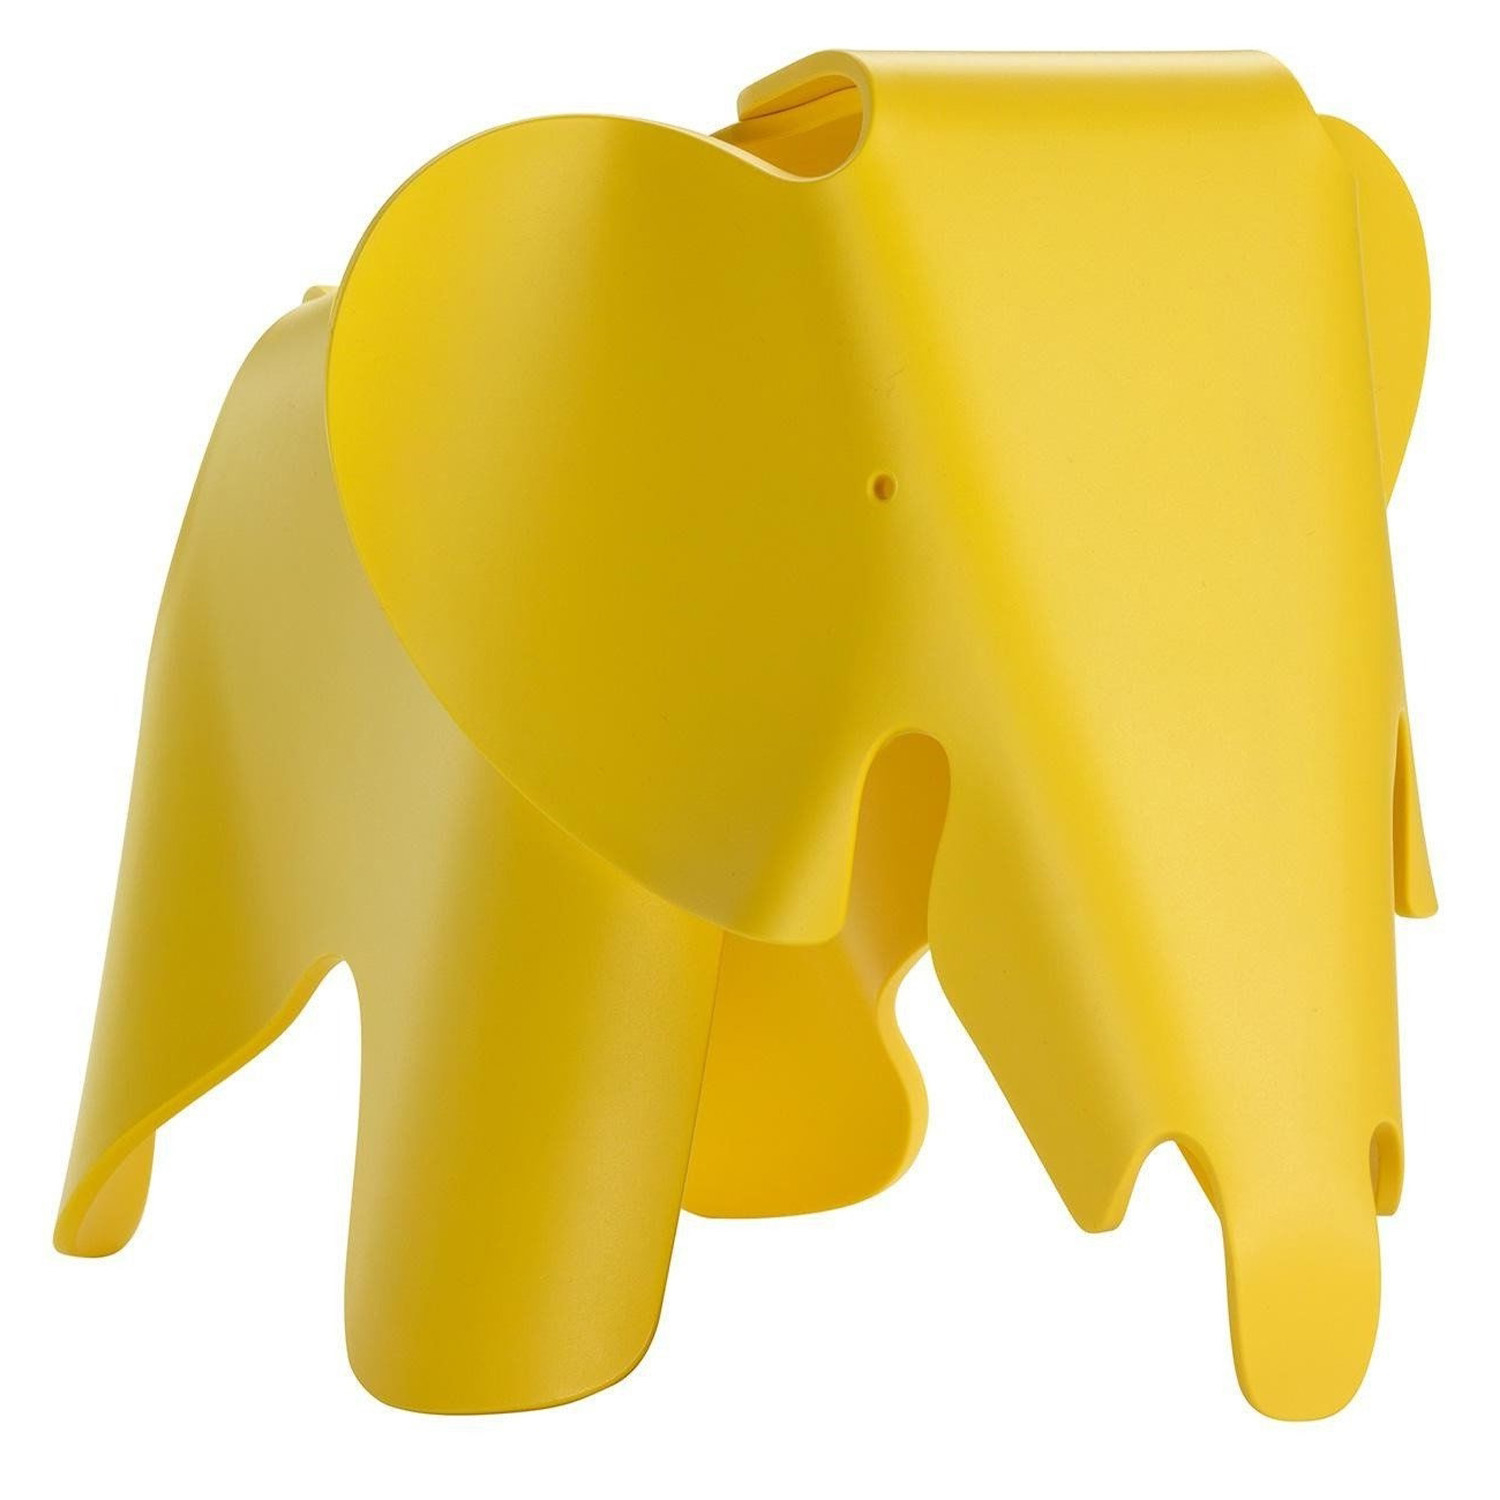 Designové stoličky Eames Elephant